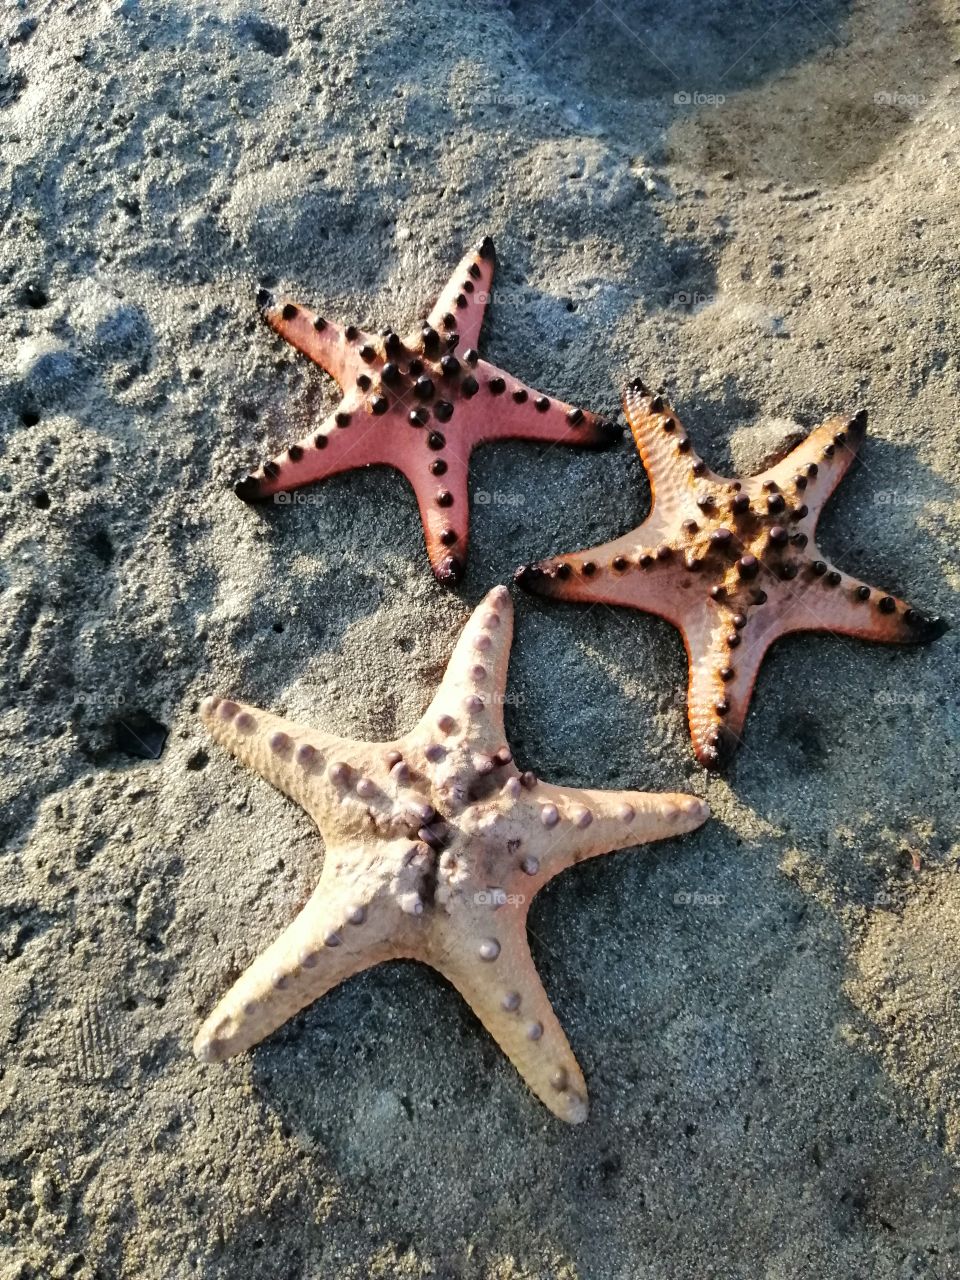 Starfish by the seashore.